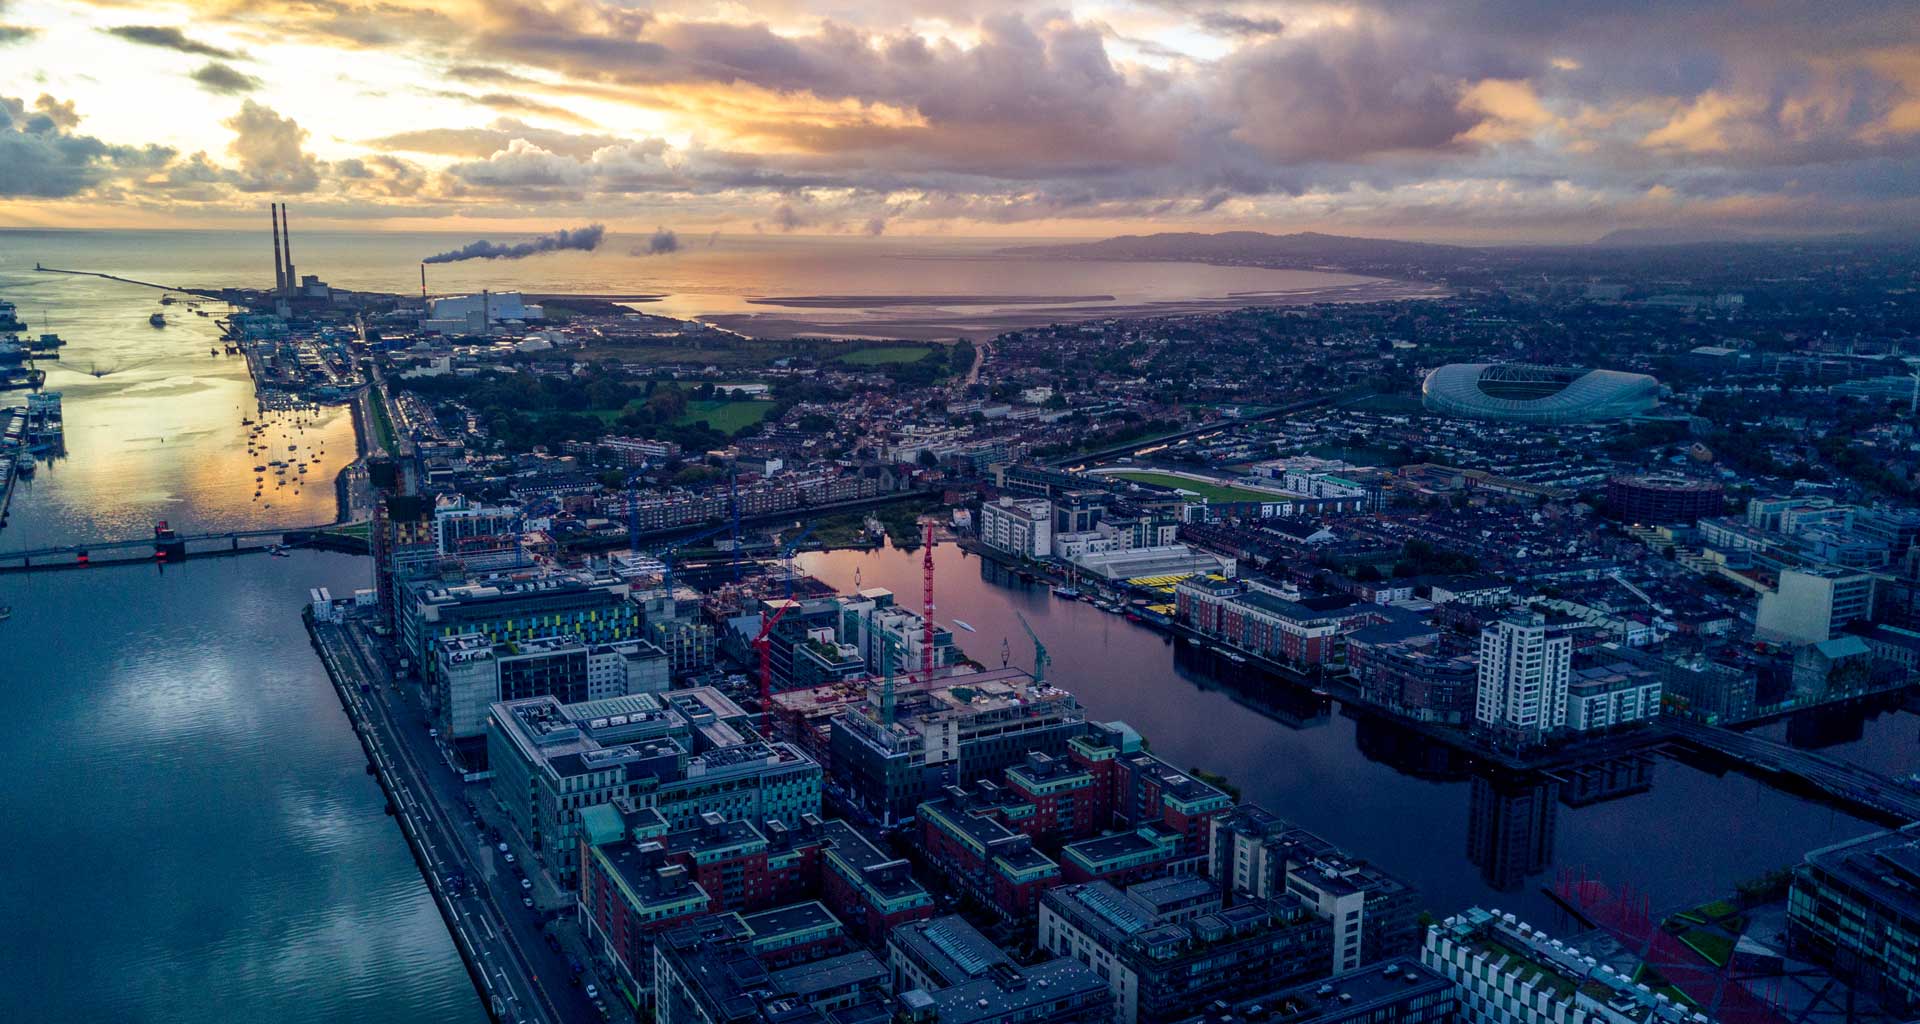 An Aerial View of Dublin City